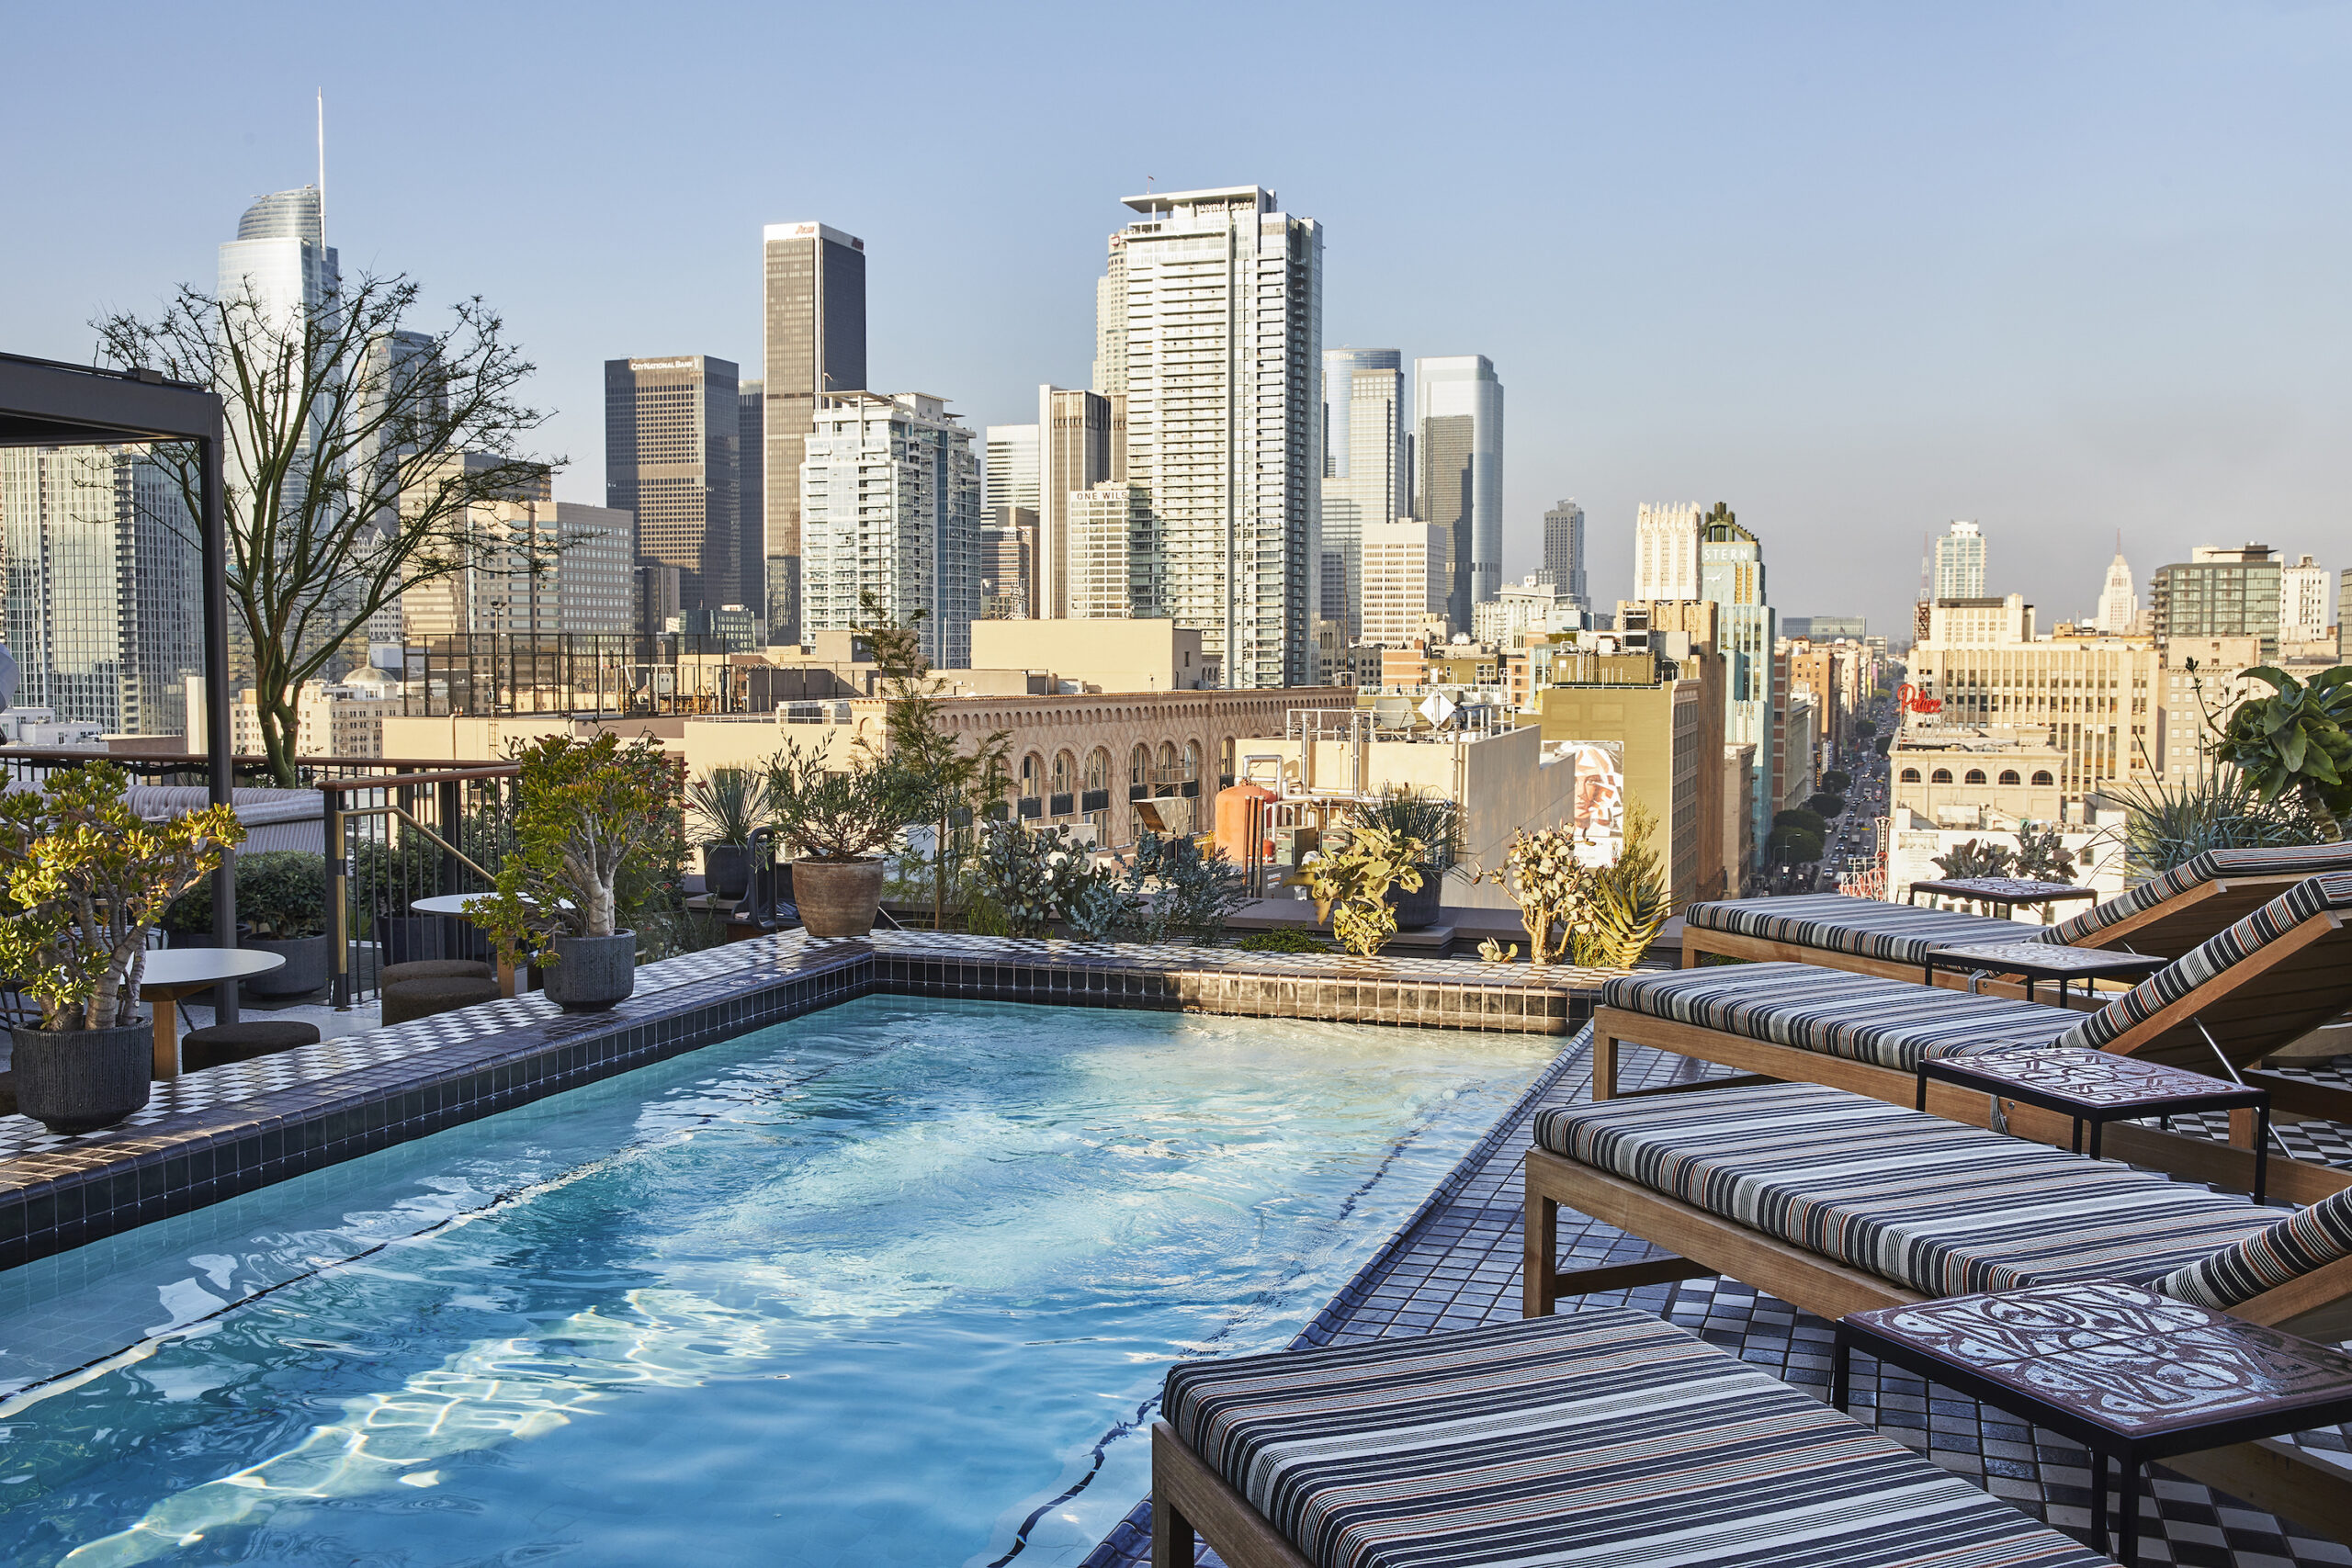 Rooftop pool in Los Angeles